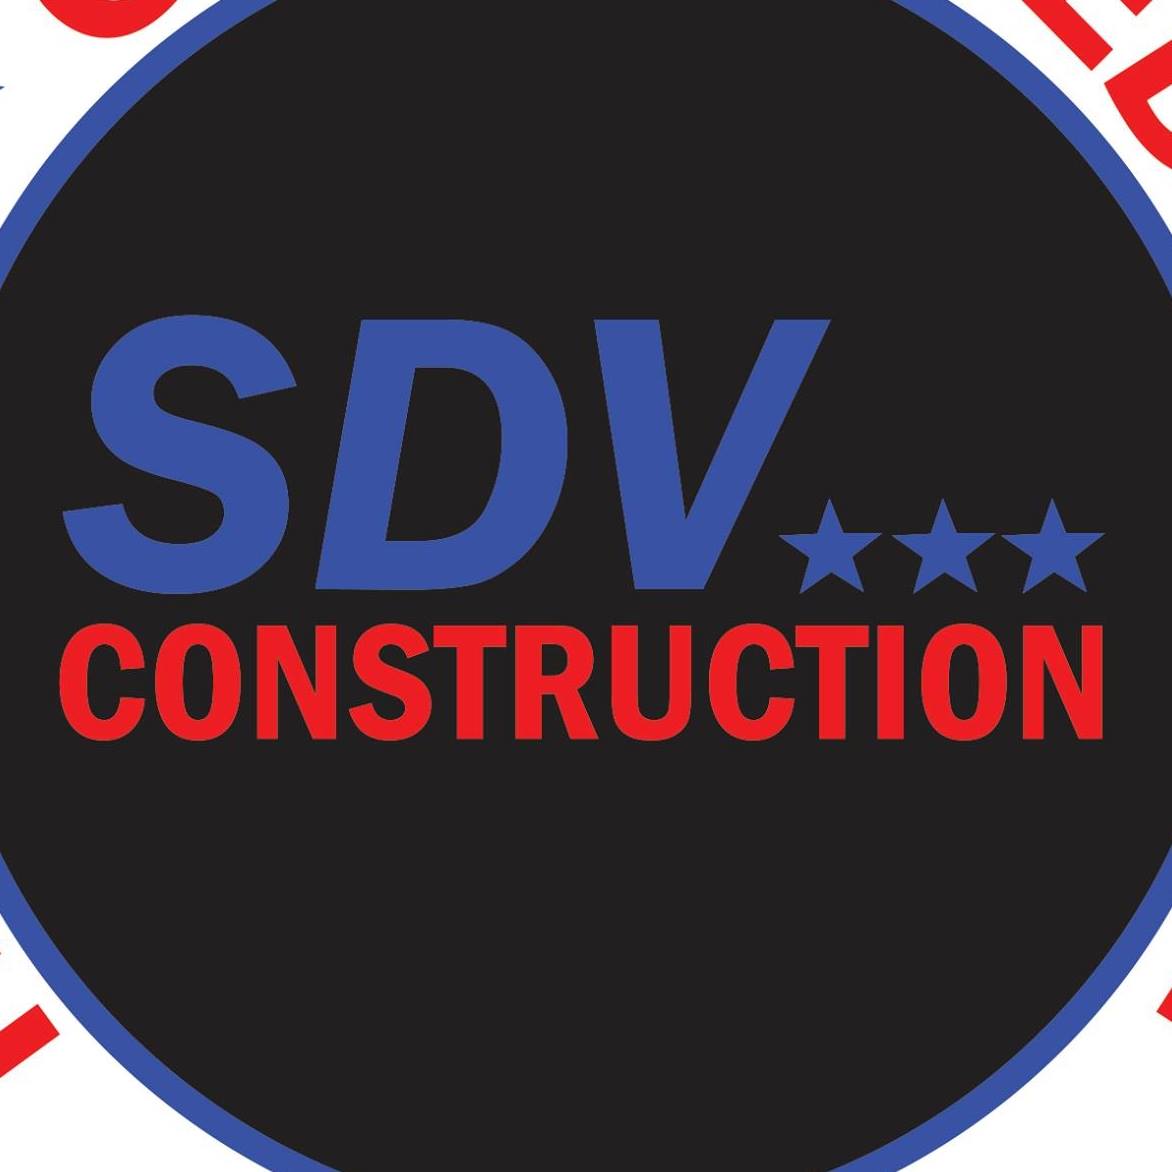 Company logo of SDV Construction